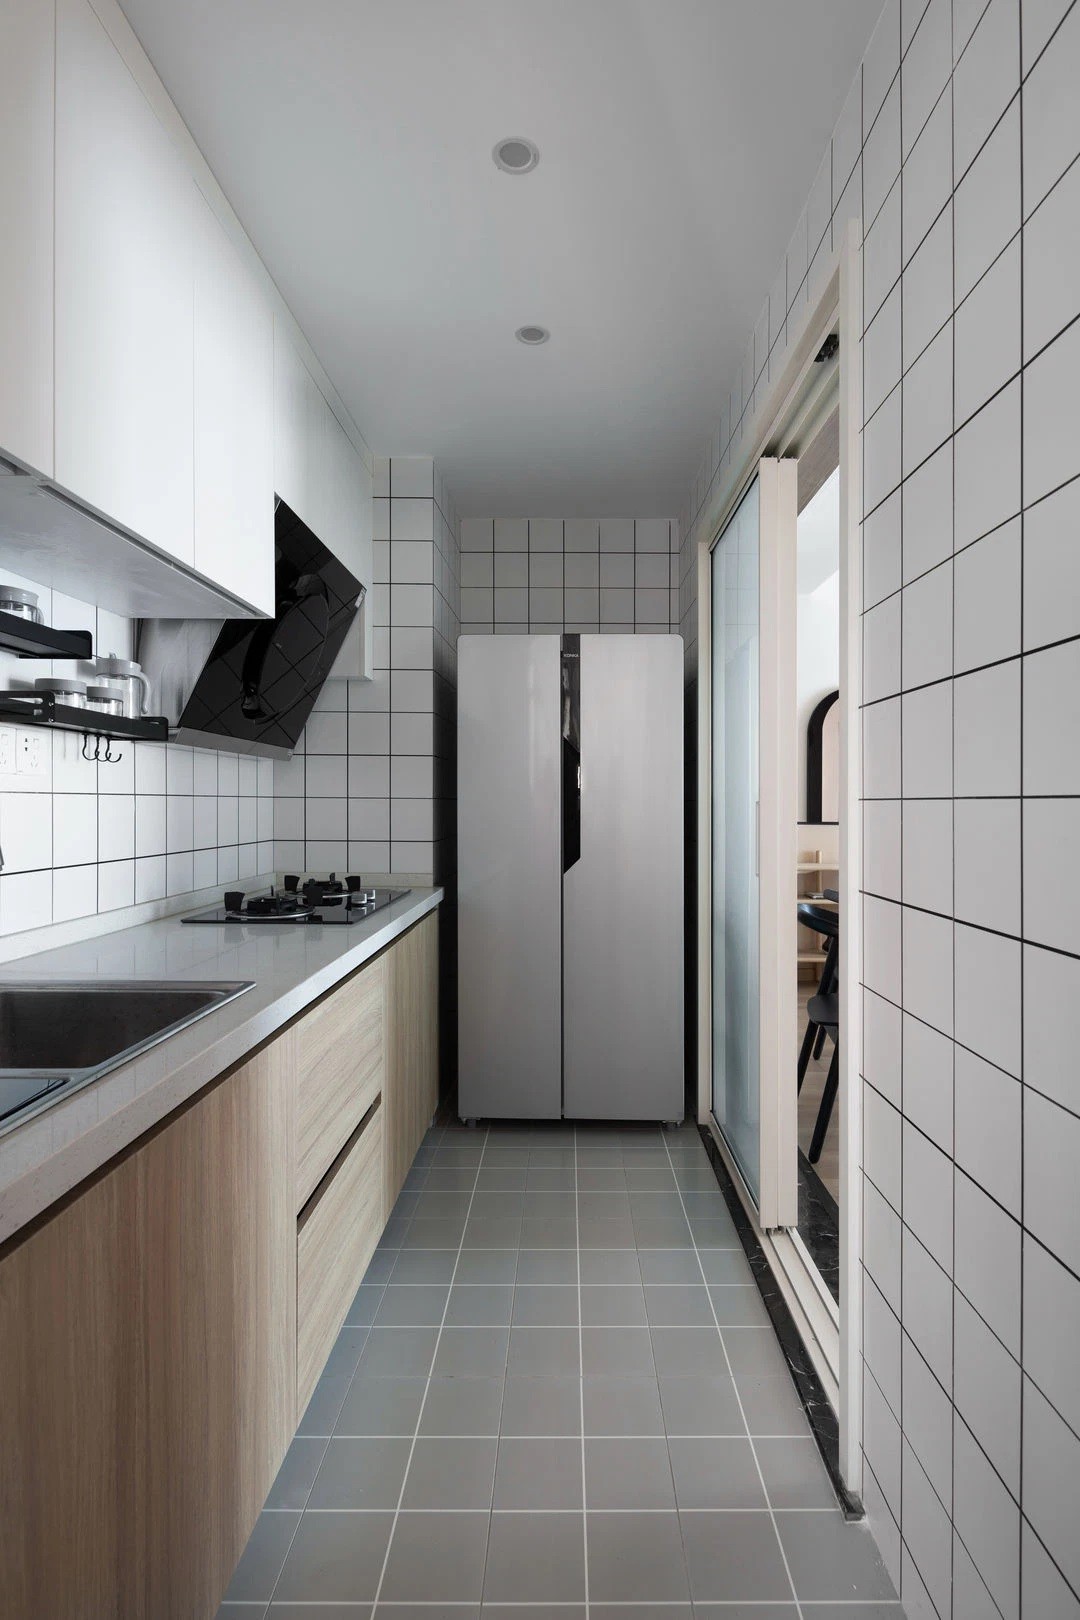 
Căn bếp nhỏ gọn được bố trí đầy đủ tiện nghi được sắp xếp gọn gàng, ngăn nắp nhờ hệ tủ treo tường
